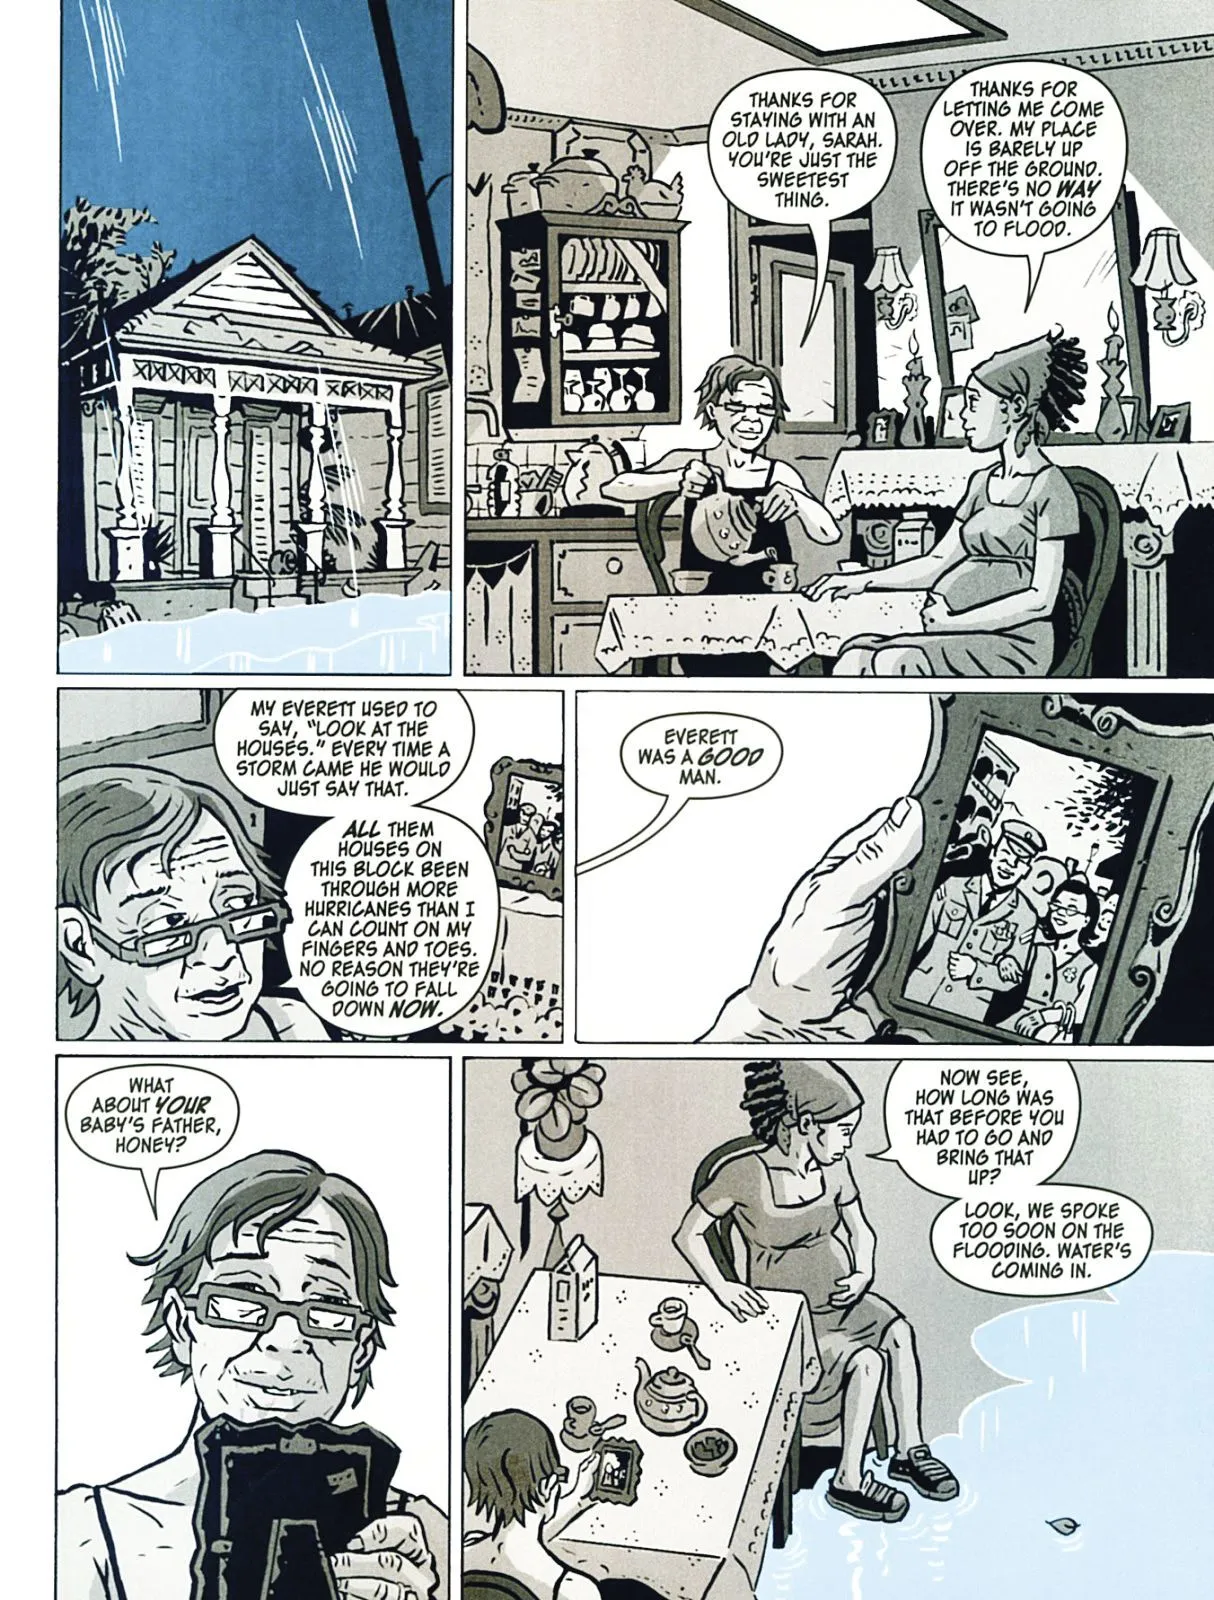 Dark Rain - A New Orleans Story, Mat Johnson and Simone Gane, Vertigo Comics, 2010.